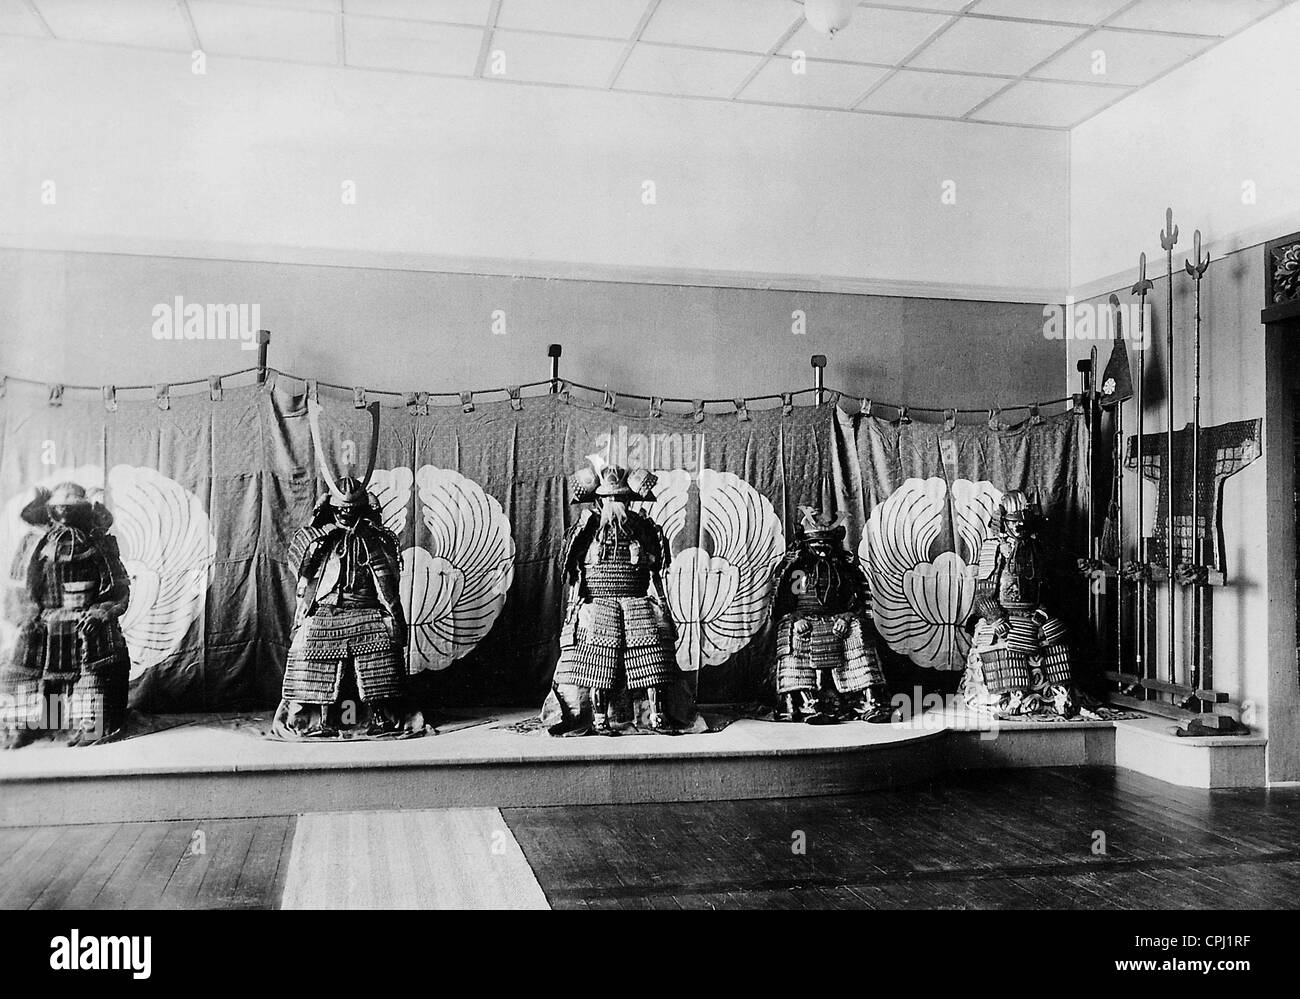 Armure de samouraï dans une exposition du Musée de Berlin des Arts et Métiers, 1937 Banque D'Images